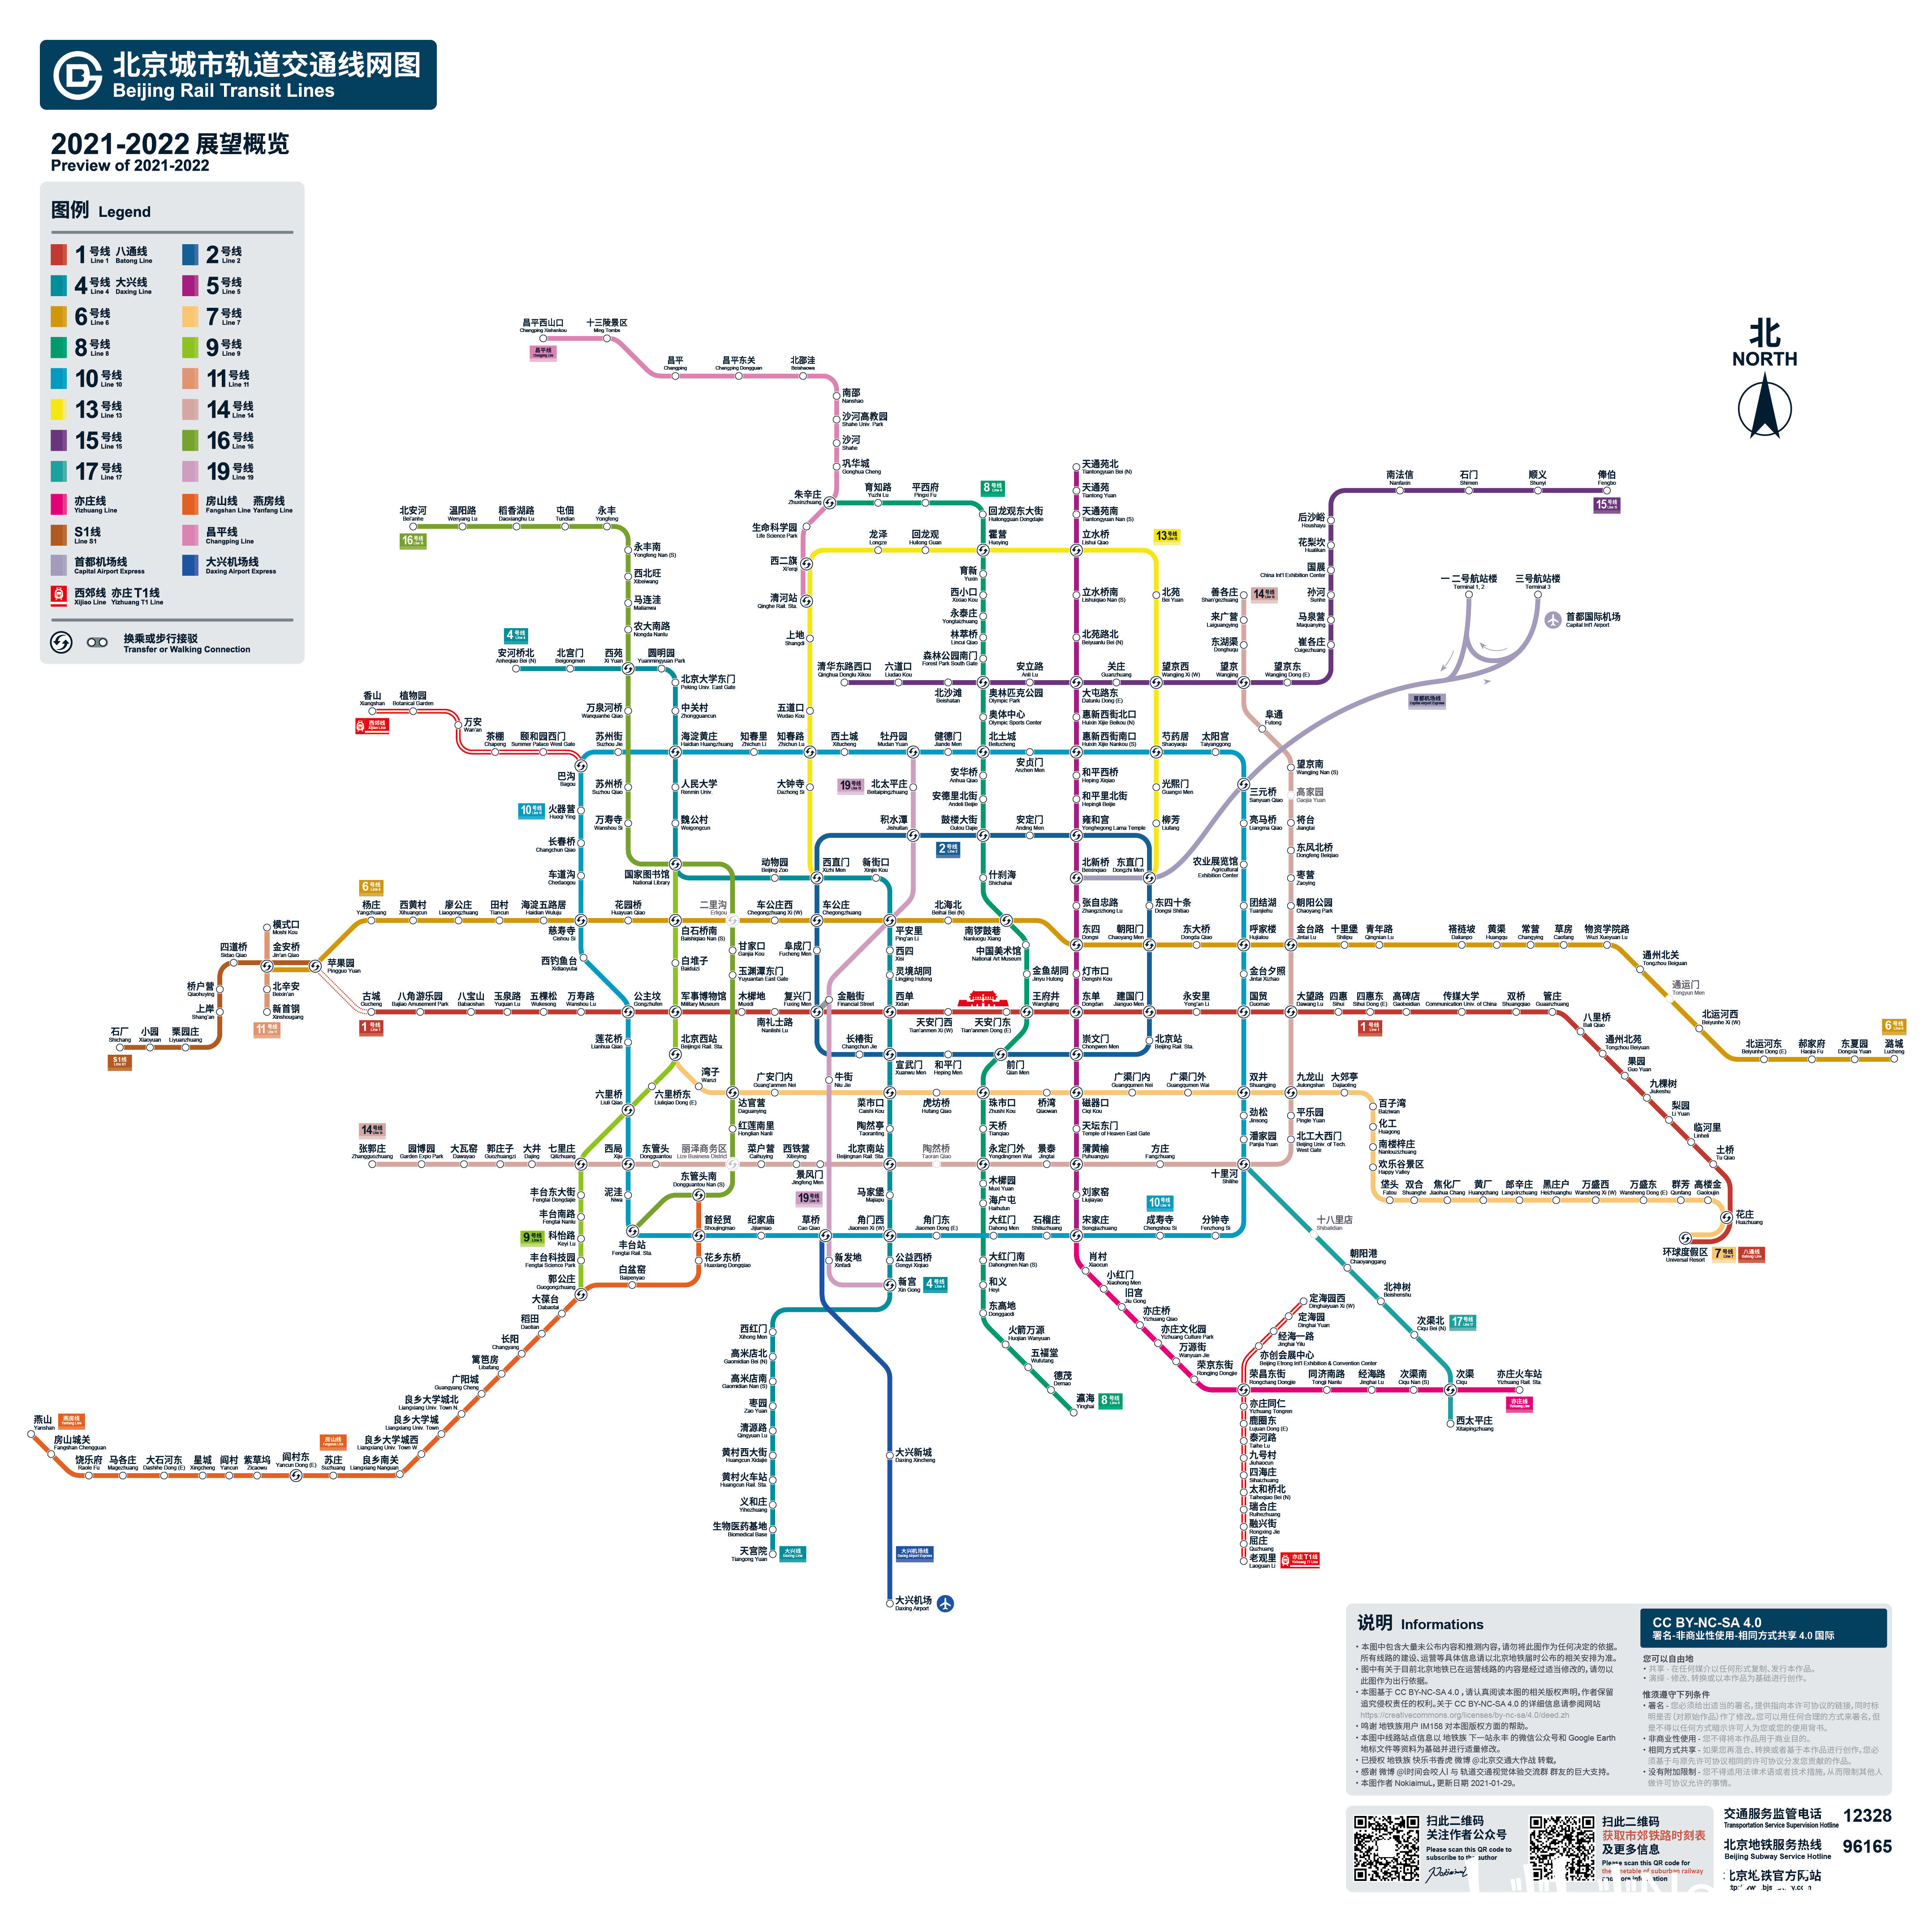 图中有关于目前北京地铁已在运营线路的内容是经过适当修改的